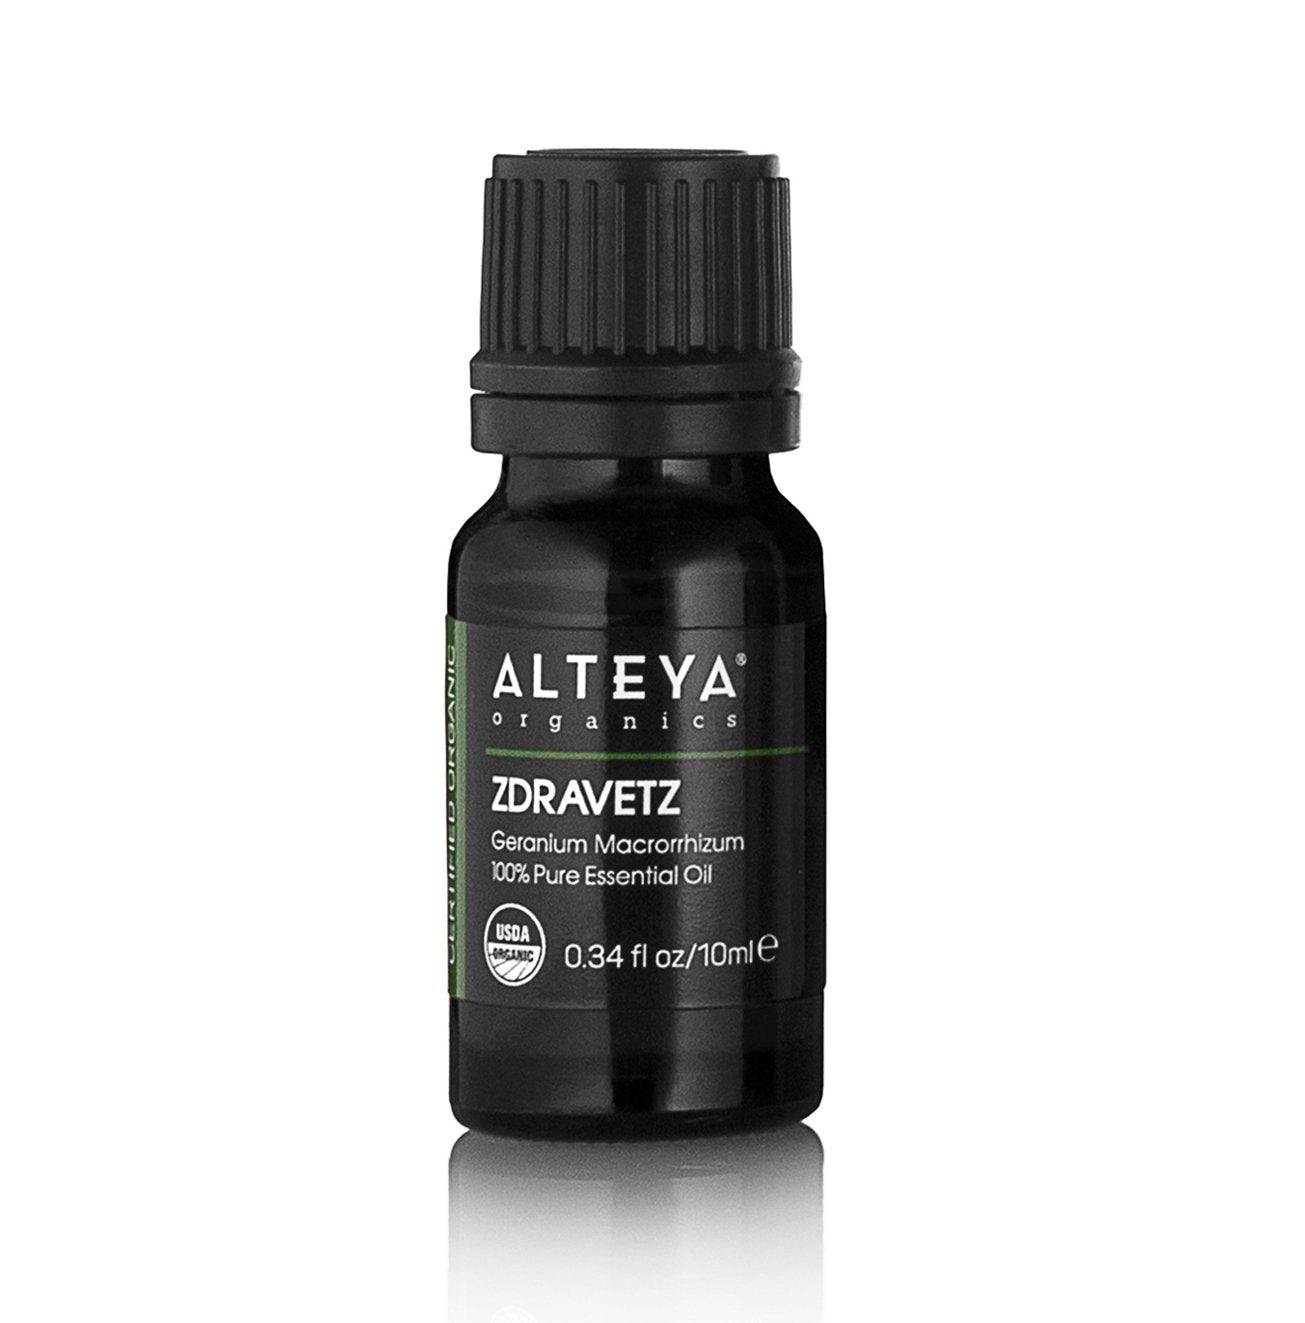 A bottle of Alteya Organics Zdravetz essential oil /Geranium macrorrhizum/ – True Geranium on a white background.